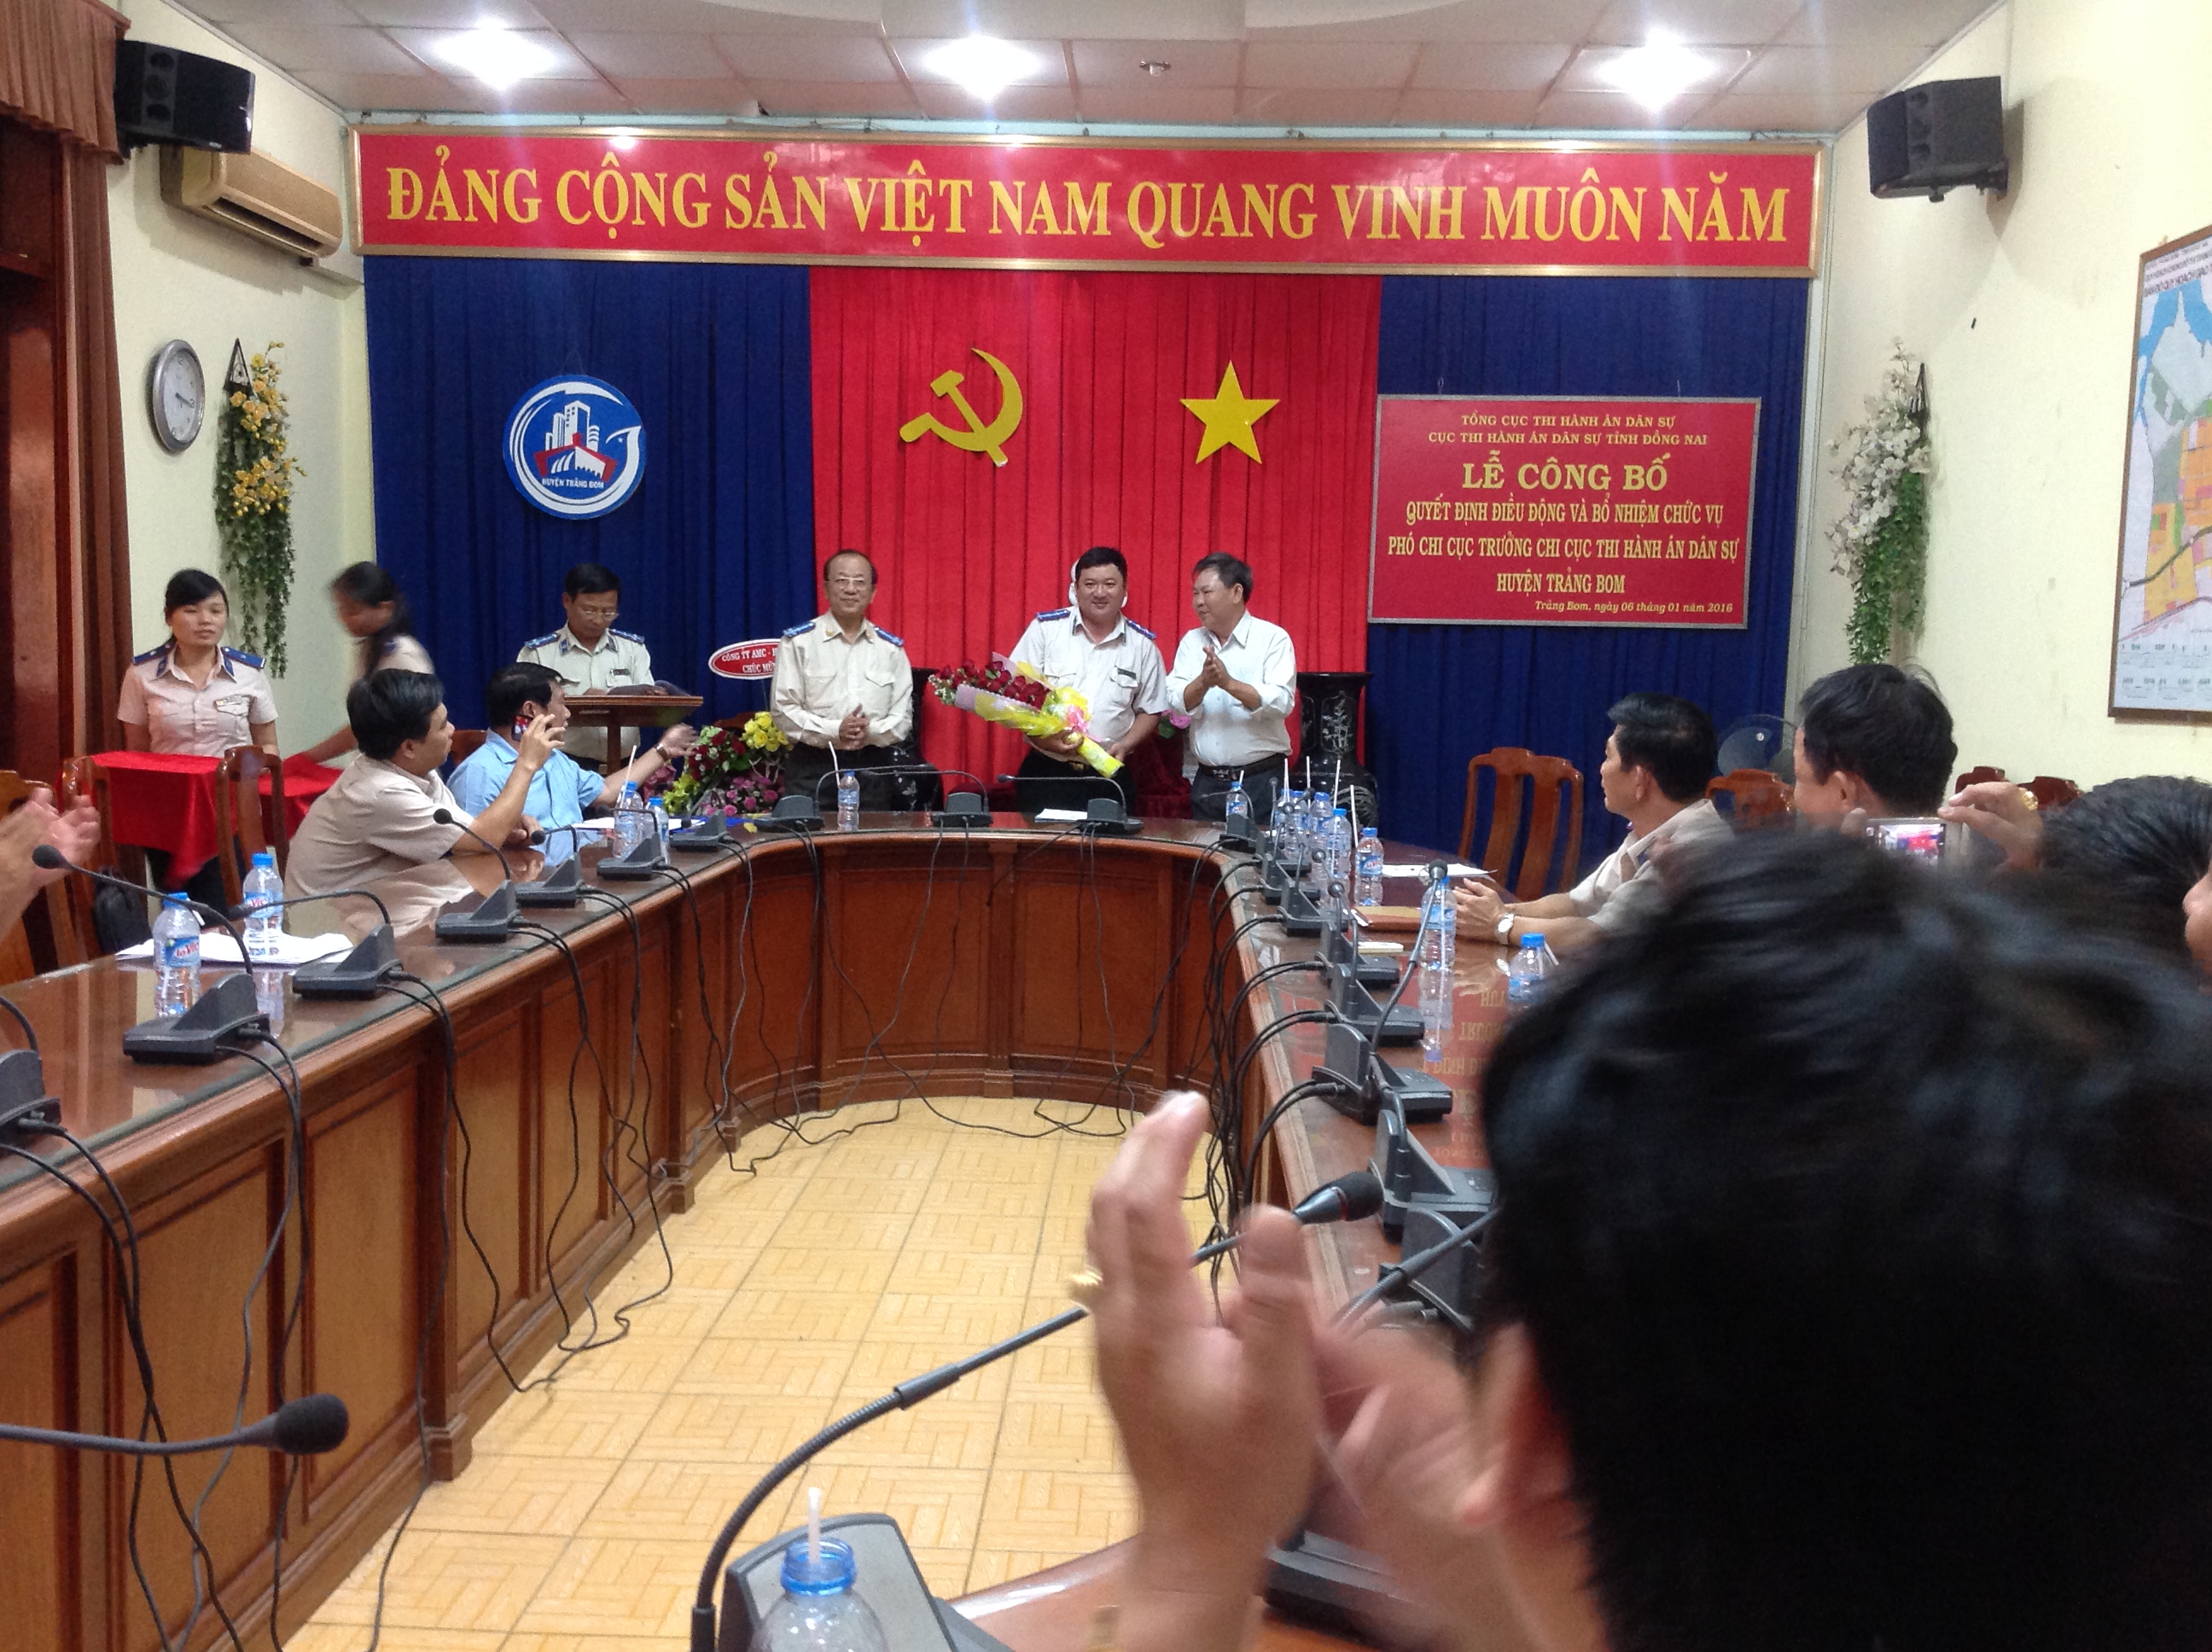 Lễ công bố và trao quyết định bổ nhiệm Phó Chi cục trưởng Chi cục thi hành án dân sự huyện Trảng Bom – Đồng Nai